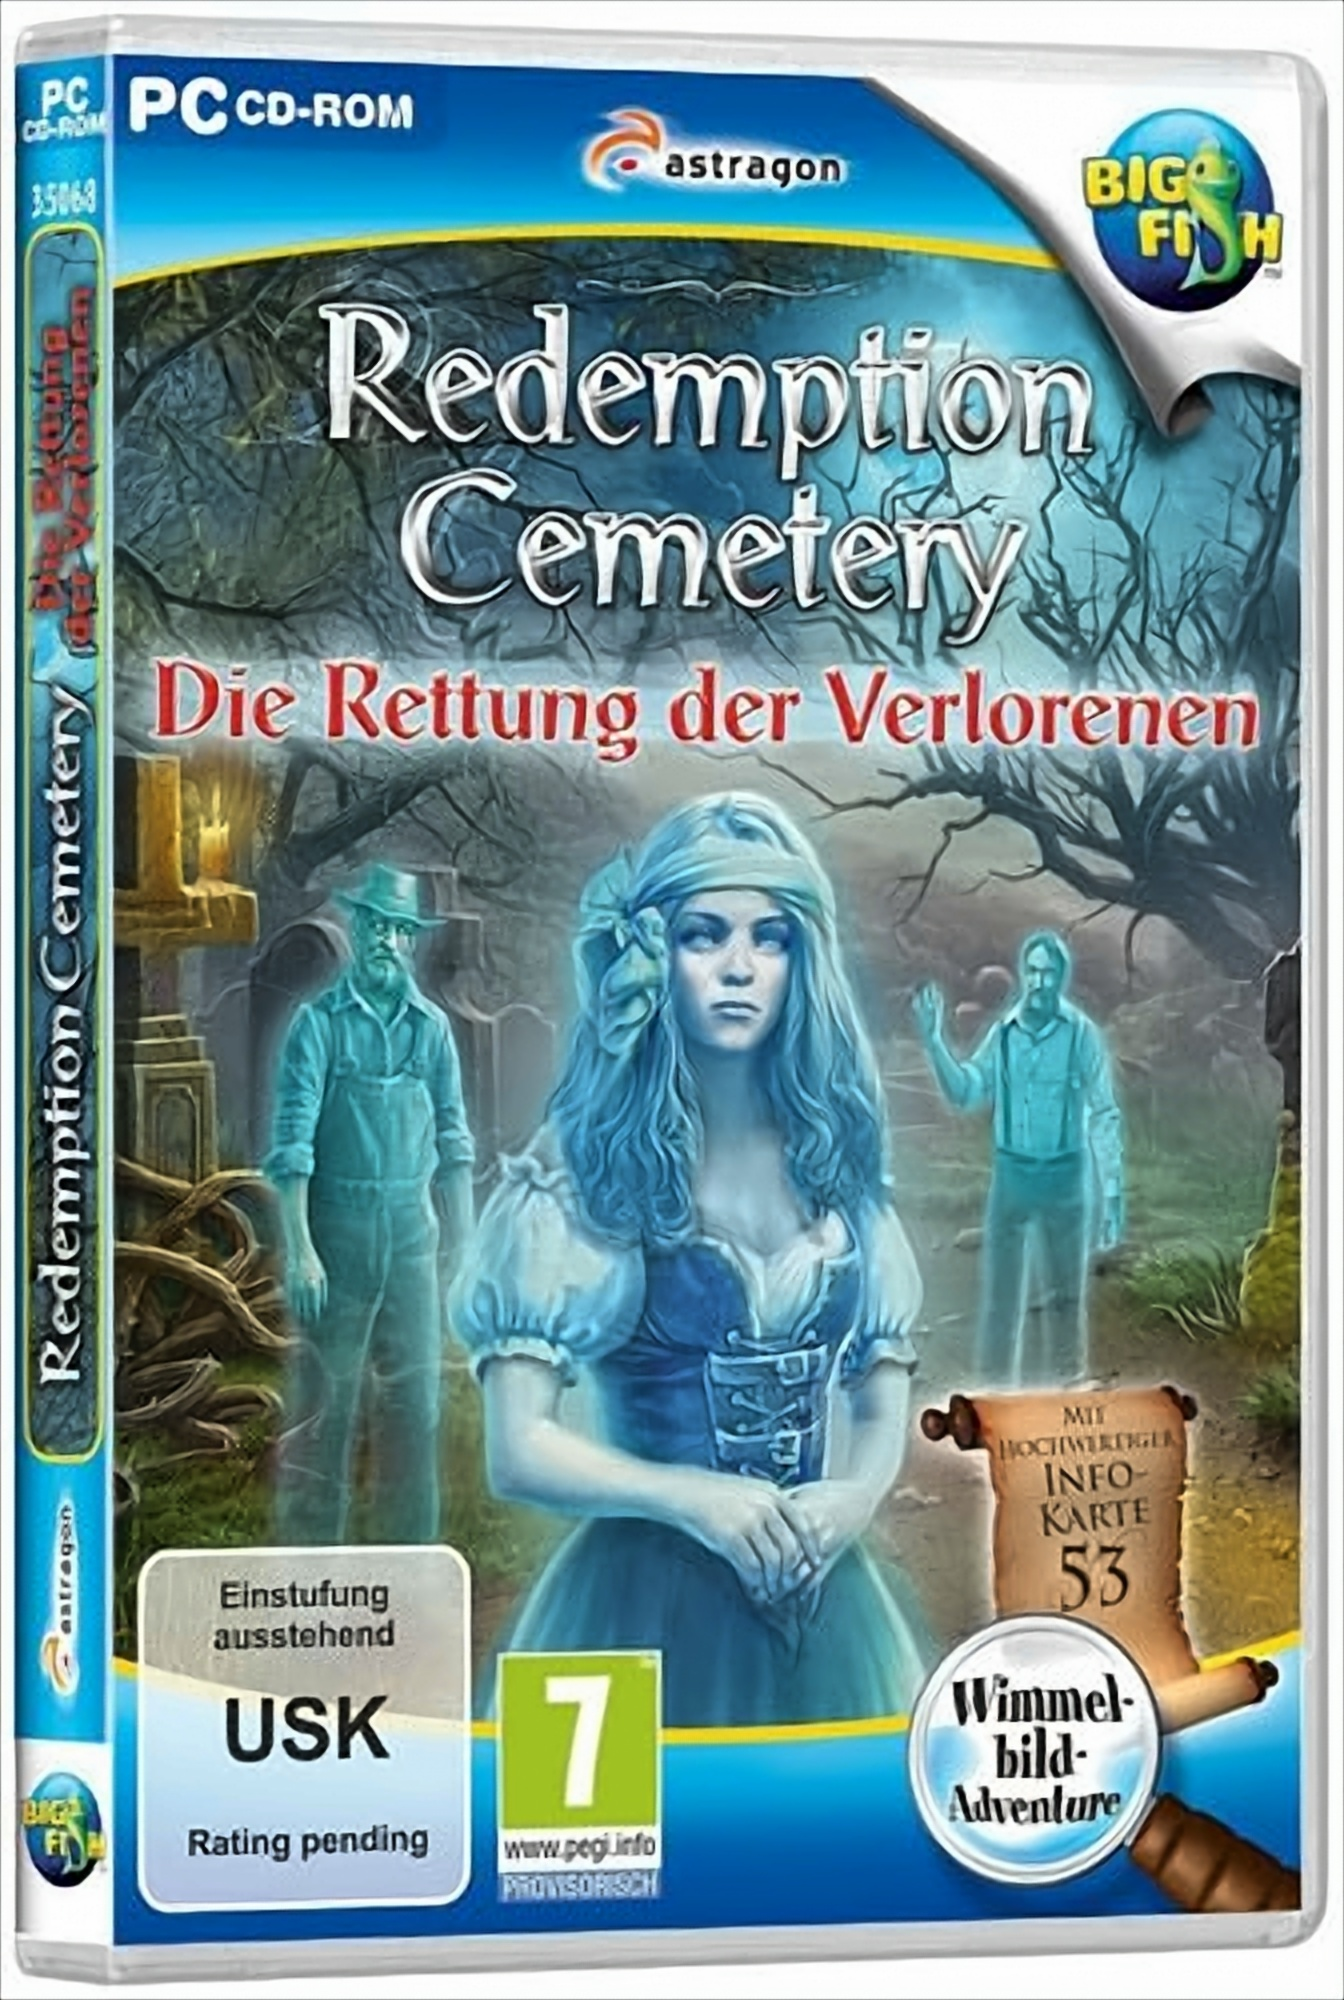 Redemption Die Verlorenen - der Rettung Cemetery: [PC]